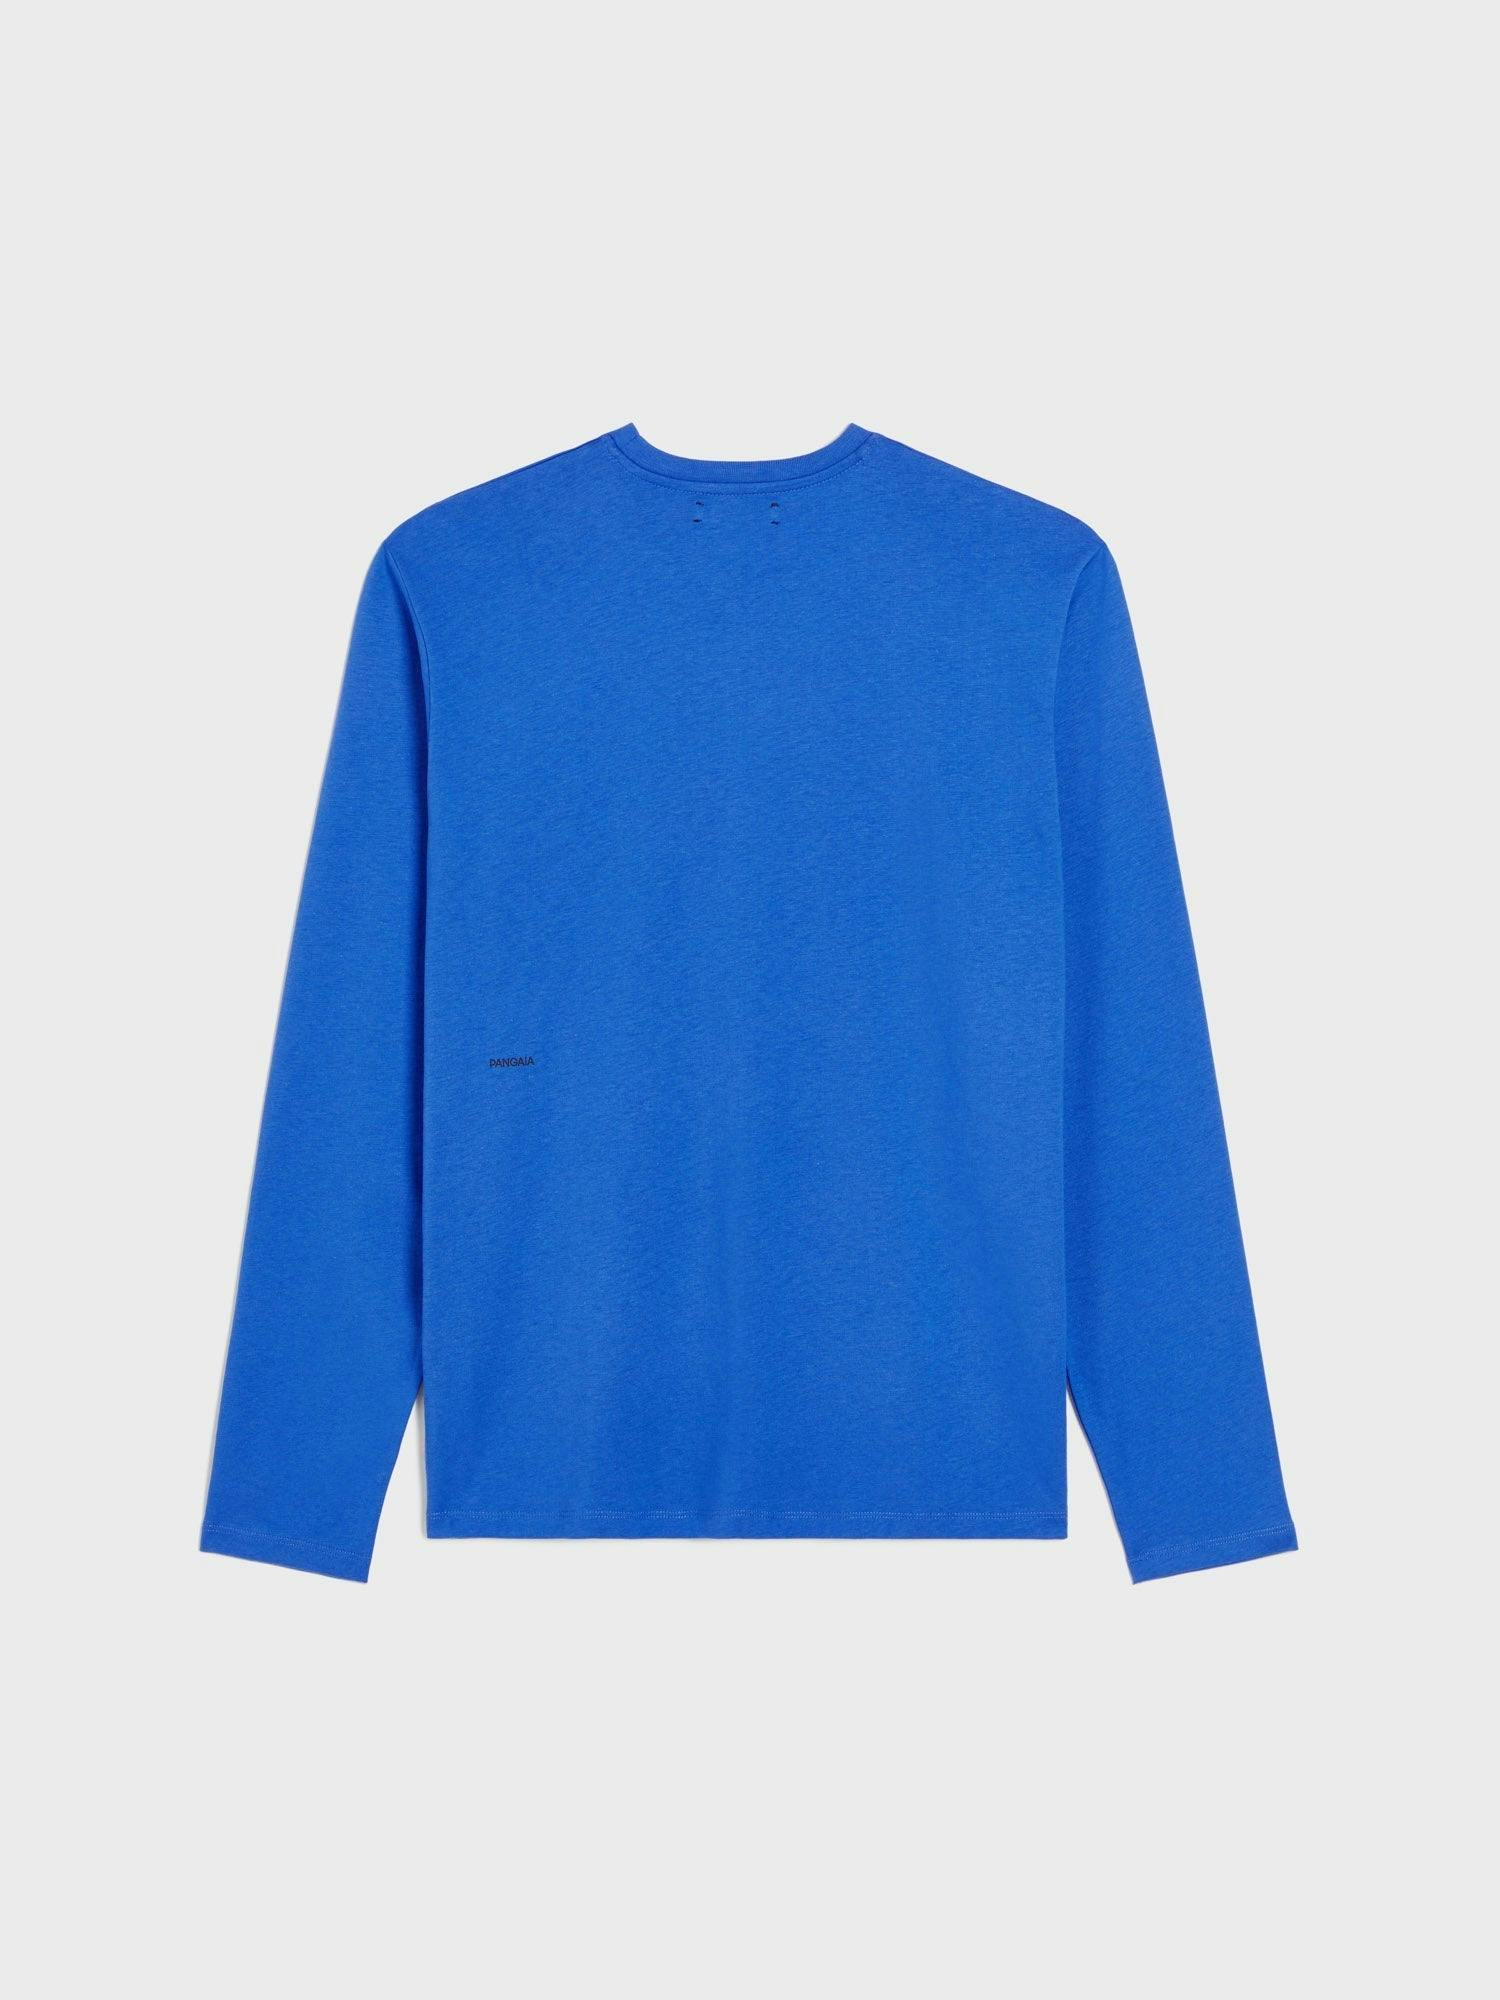 https://cdn.shopify.com/s/files/1/0035/1309/0115/products/Organic-Cotton-Long-Sleeve-T-Shirt-Cobalt-Blue-2_4e57b8db-ed12-458d-af16-2e4017ef56c7.jpg?v=1662475560